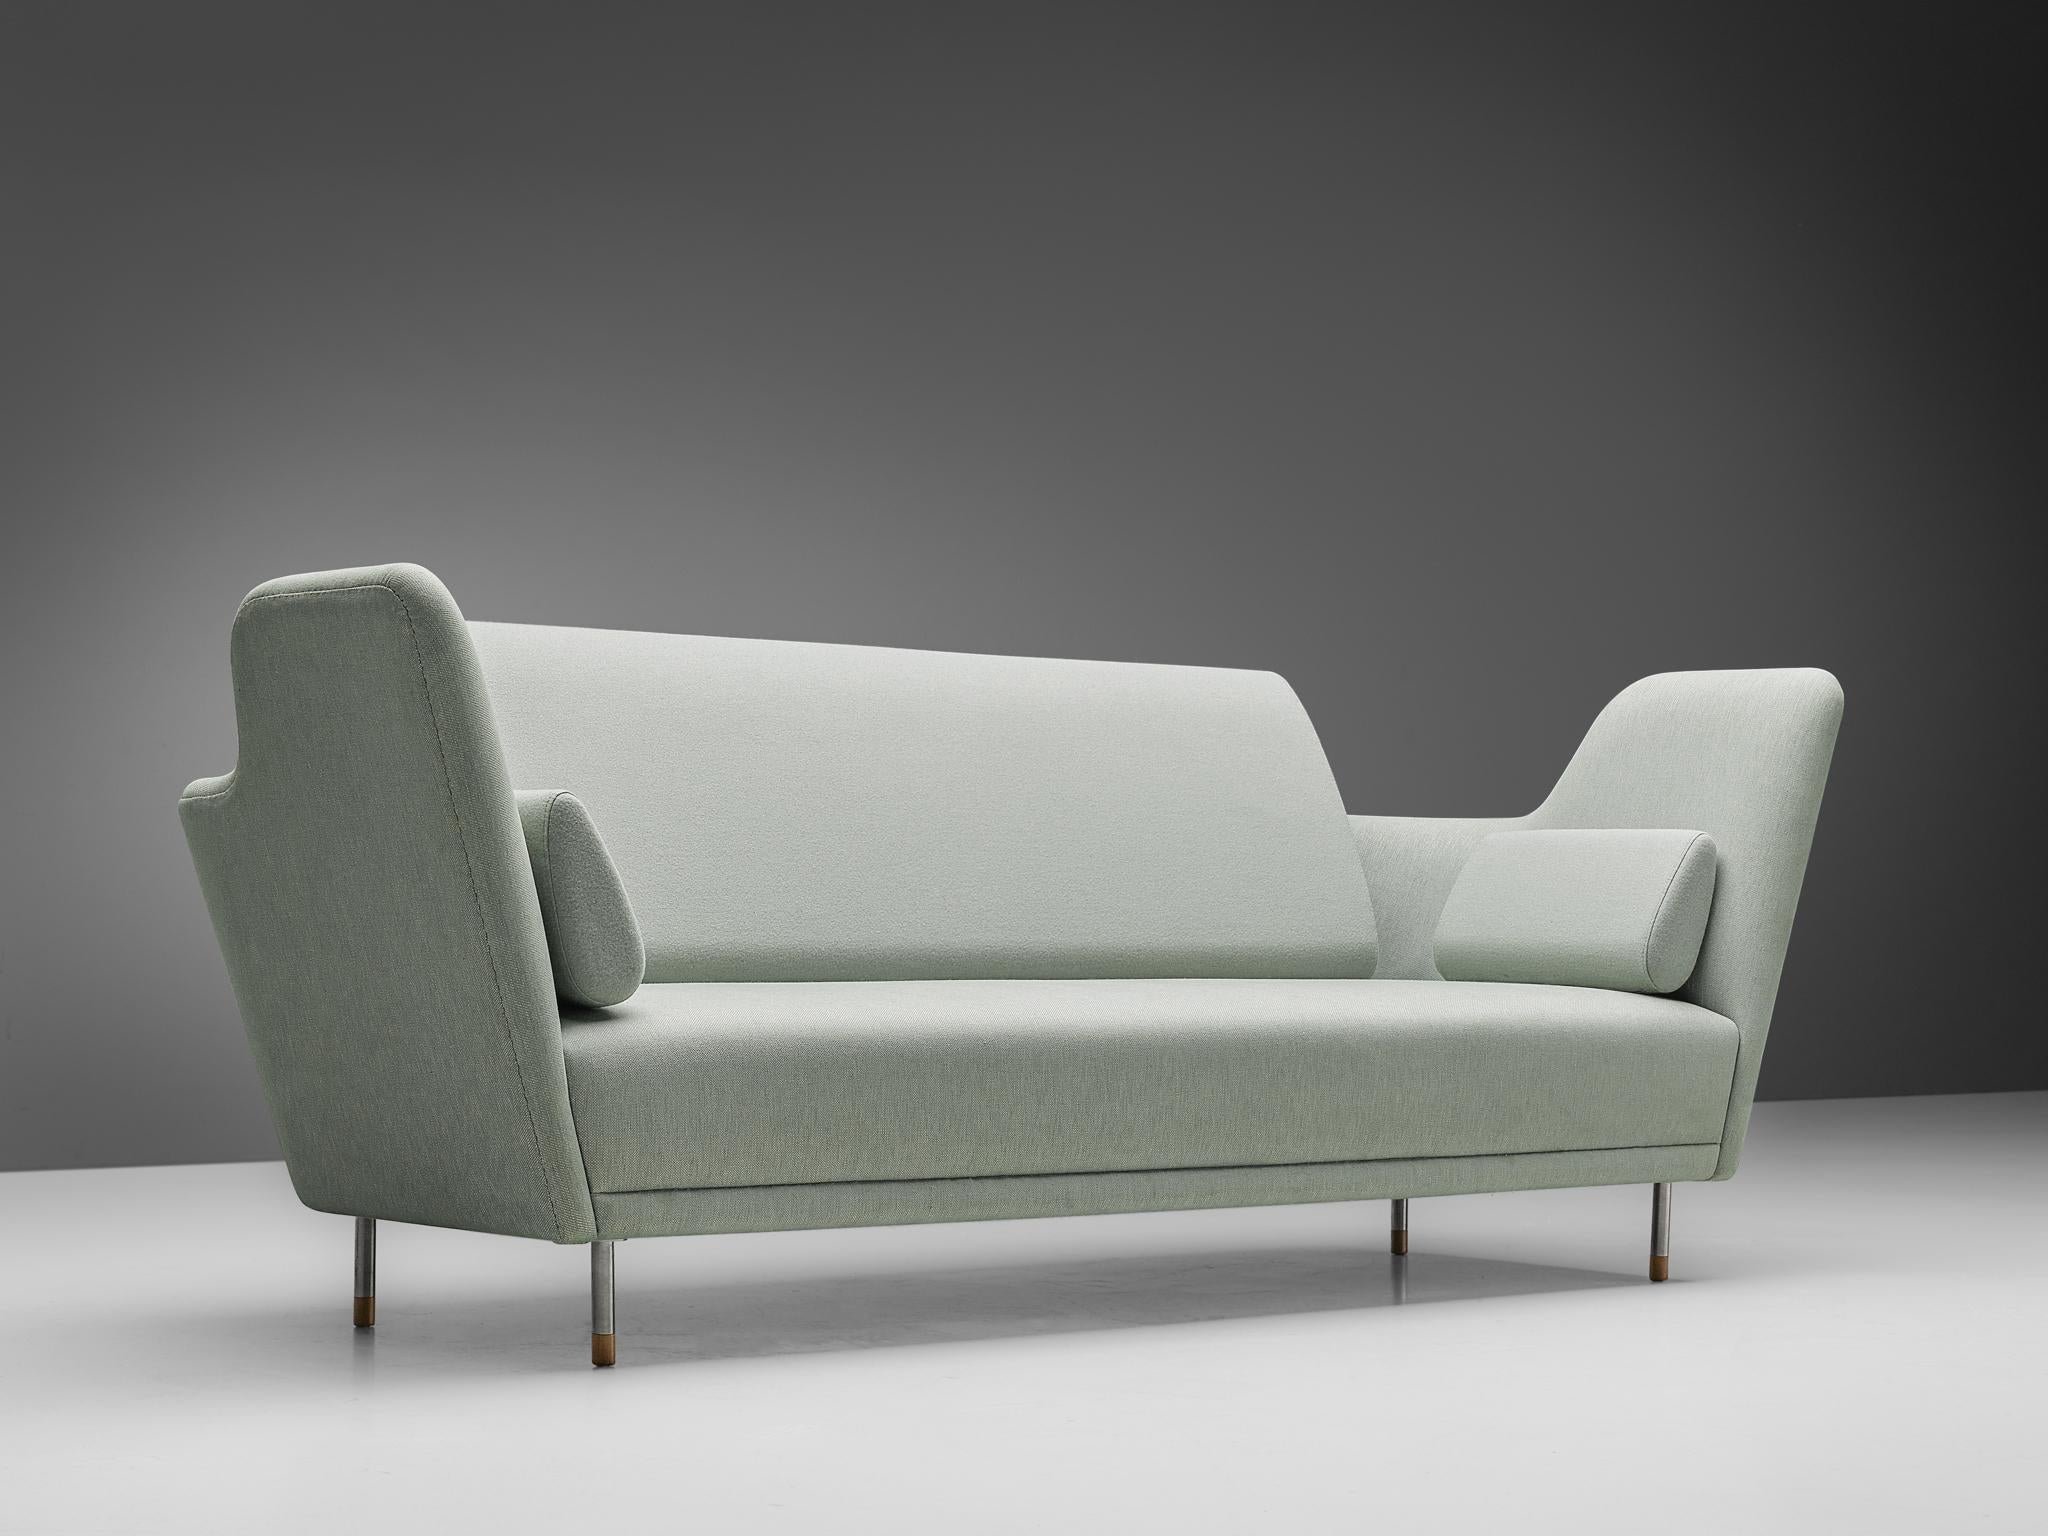 Finn Juhls, canapé modèle '57', tissu, acier, teck, cuir, Danemark, design 1957, production ultérieure

Un canapé extraordinaire conçu par Finn Juhls. Le canapé a été exposé pour la première fois dans les jardins de Tivoli à Copenhague en 1957. Le